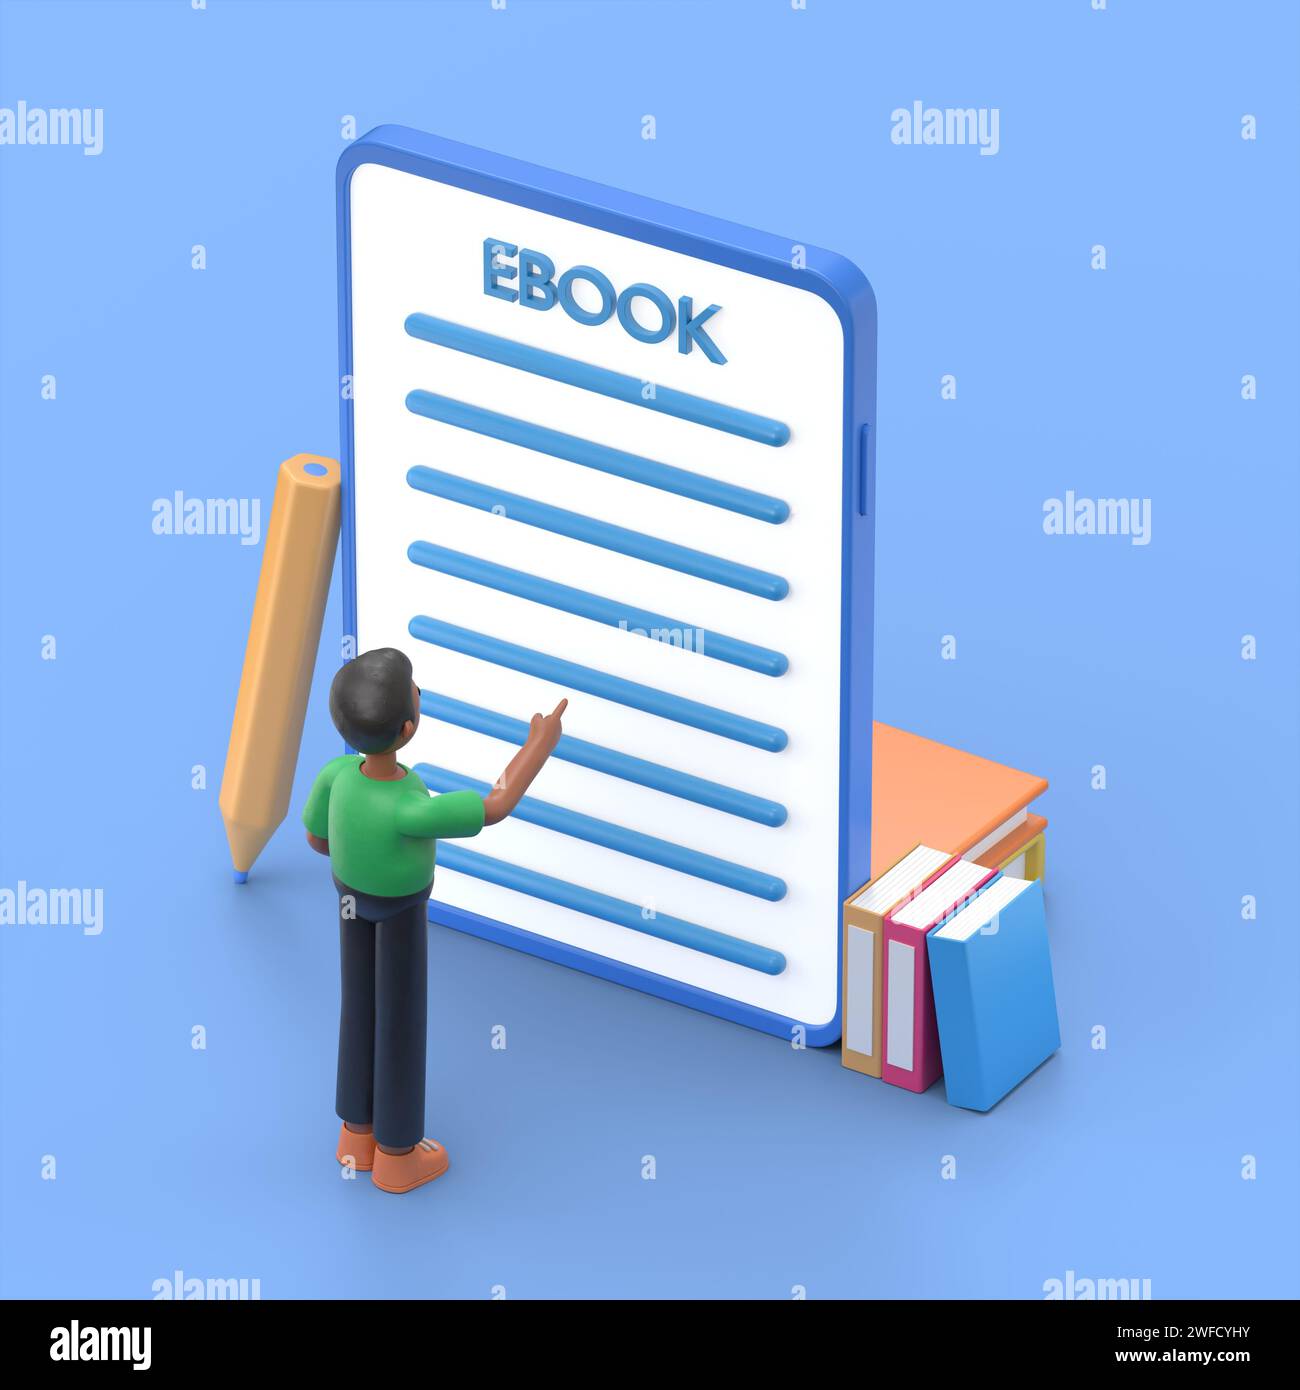 Concetto di e-book. Immagine di un uomo in piedi sui libri davanti allo schermo del tablet mobile. Stile 3D piatto. Foto Stock